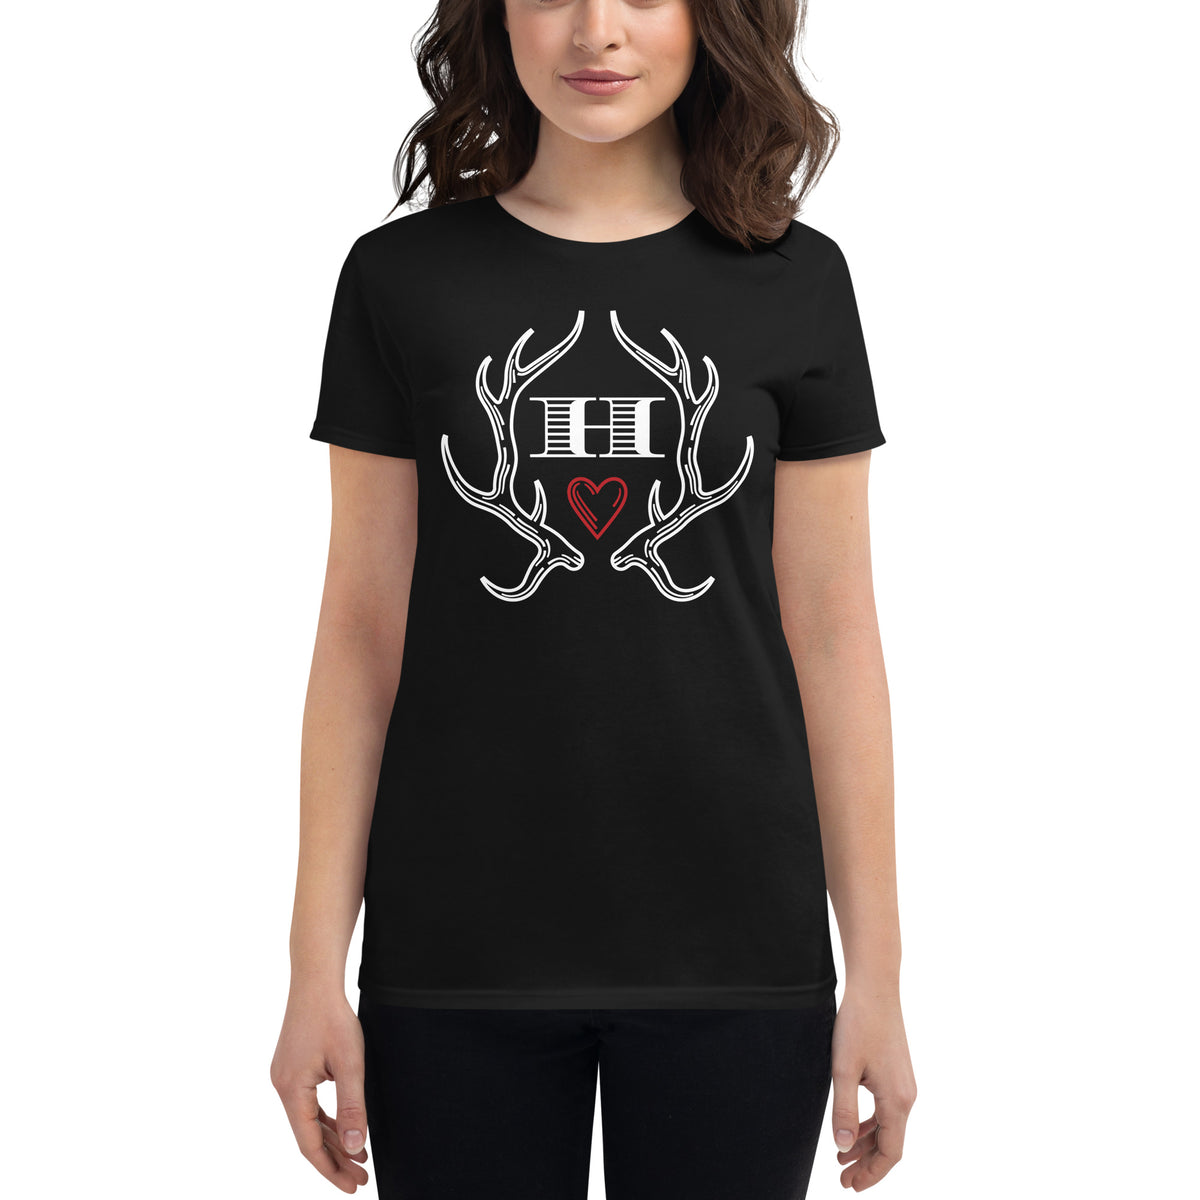 "Dark Hart Books" Women's Fitted T-shirt